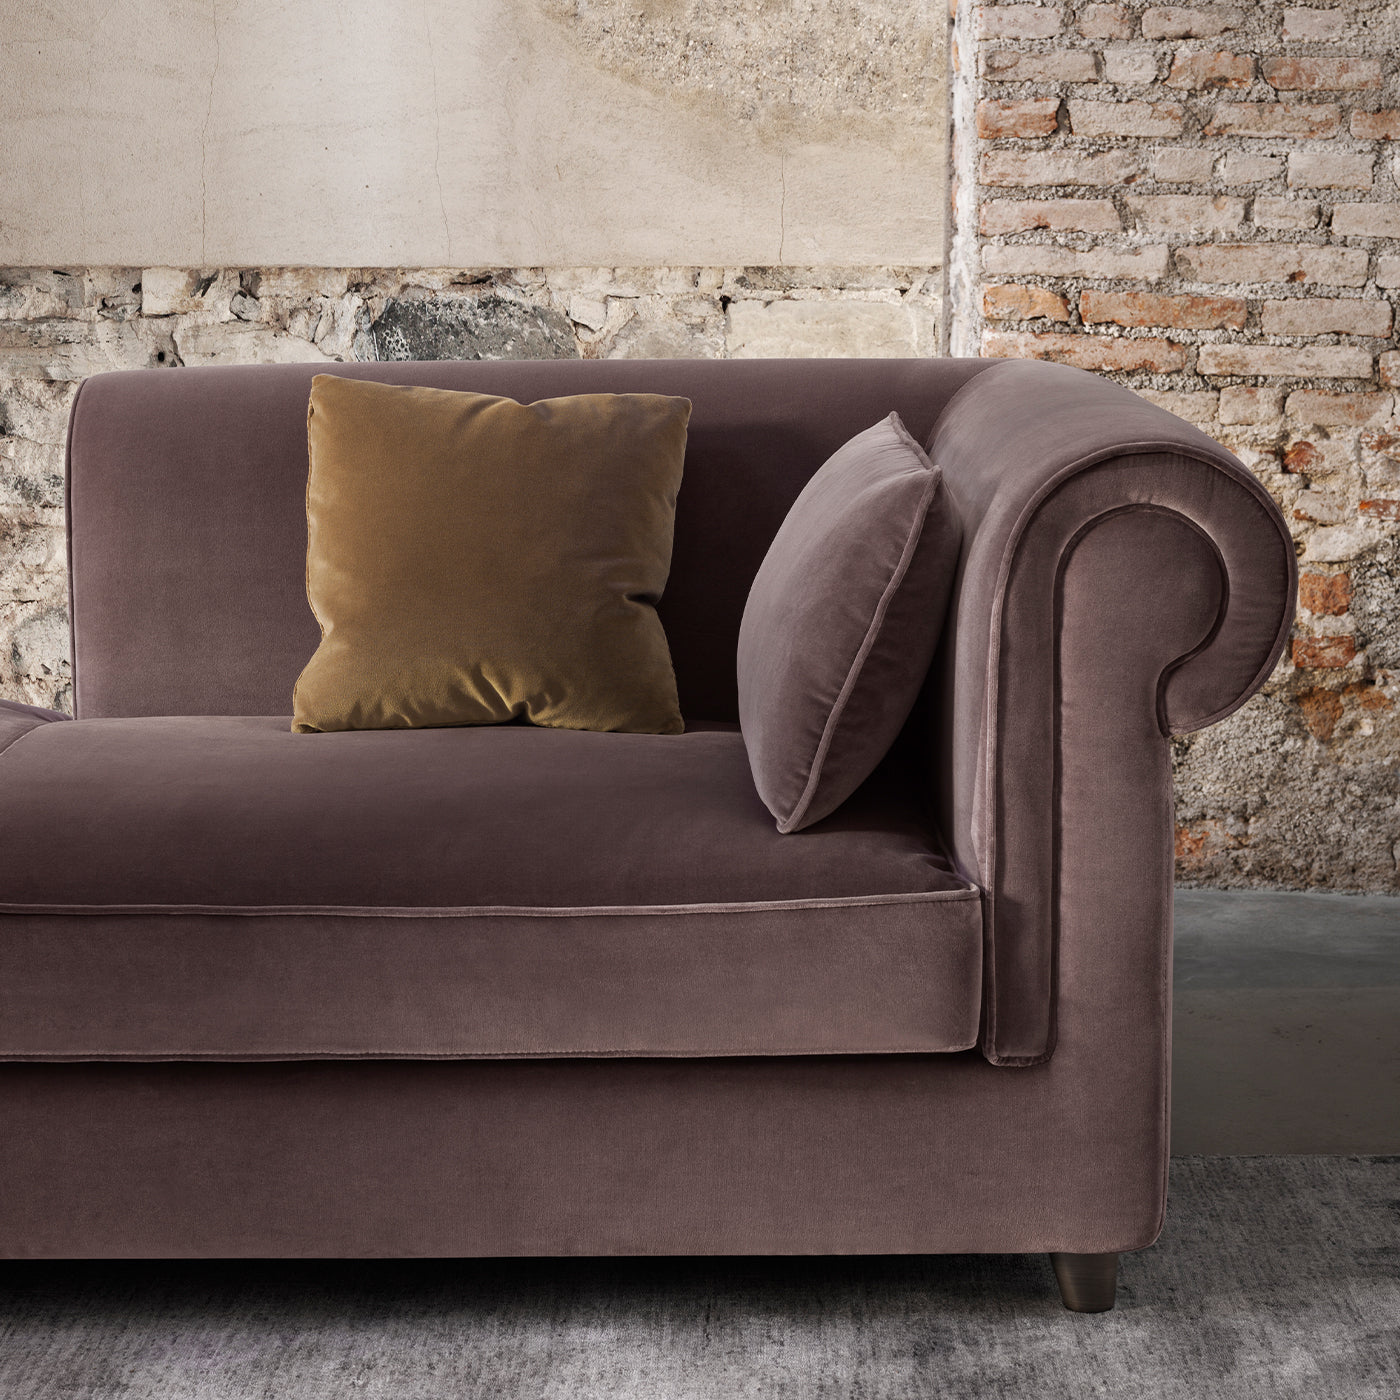 Portofino Gray Sofa by Stefano Giovannoni #1 - Alternative view 3